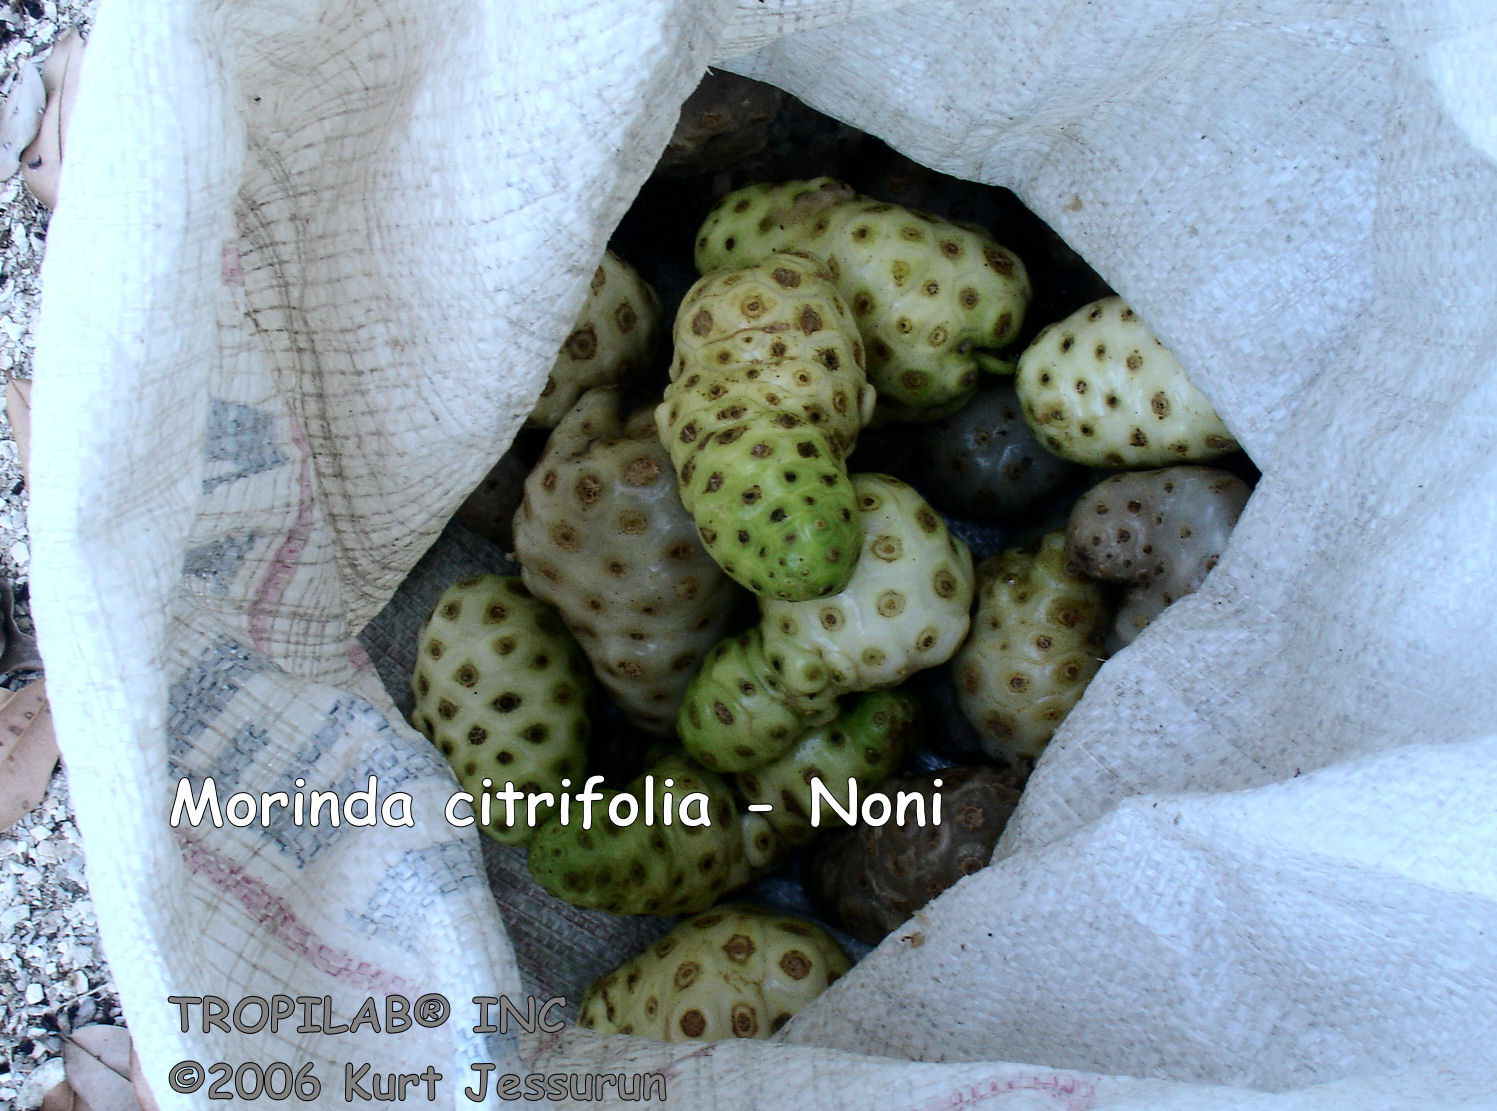 Morinda citrifolia - Noni fruits